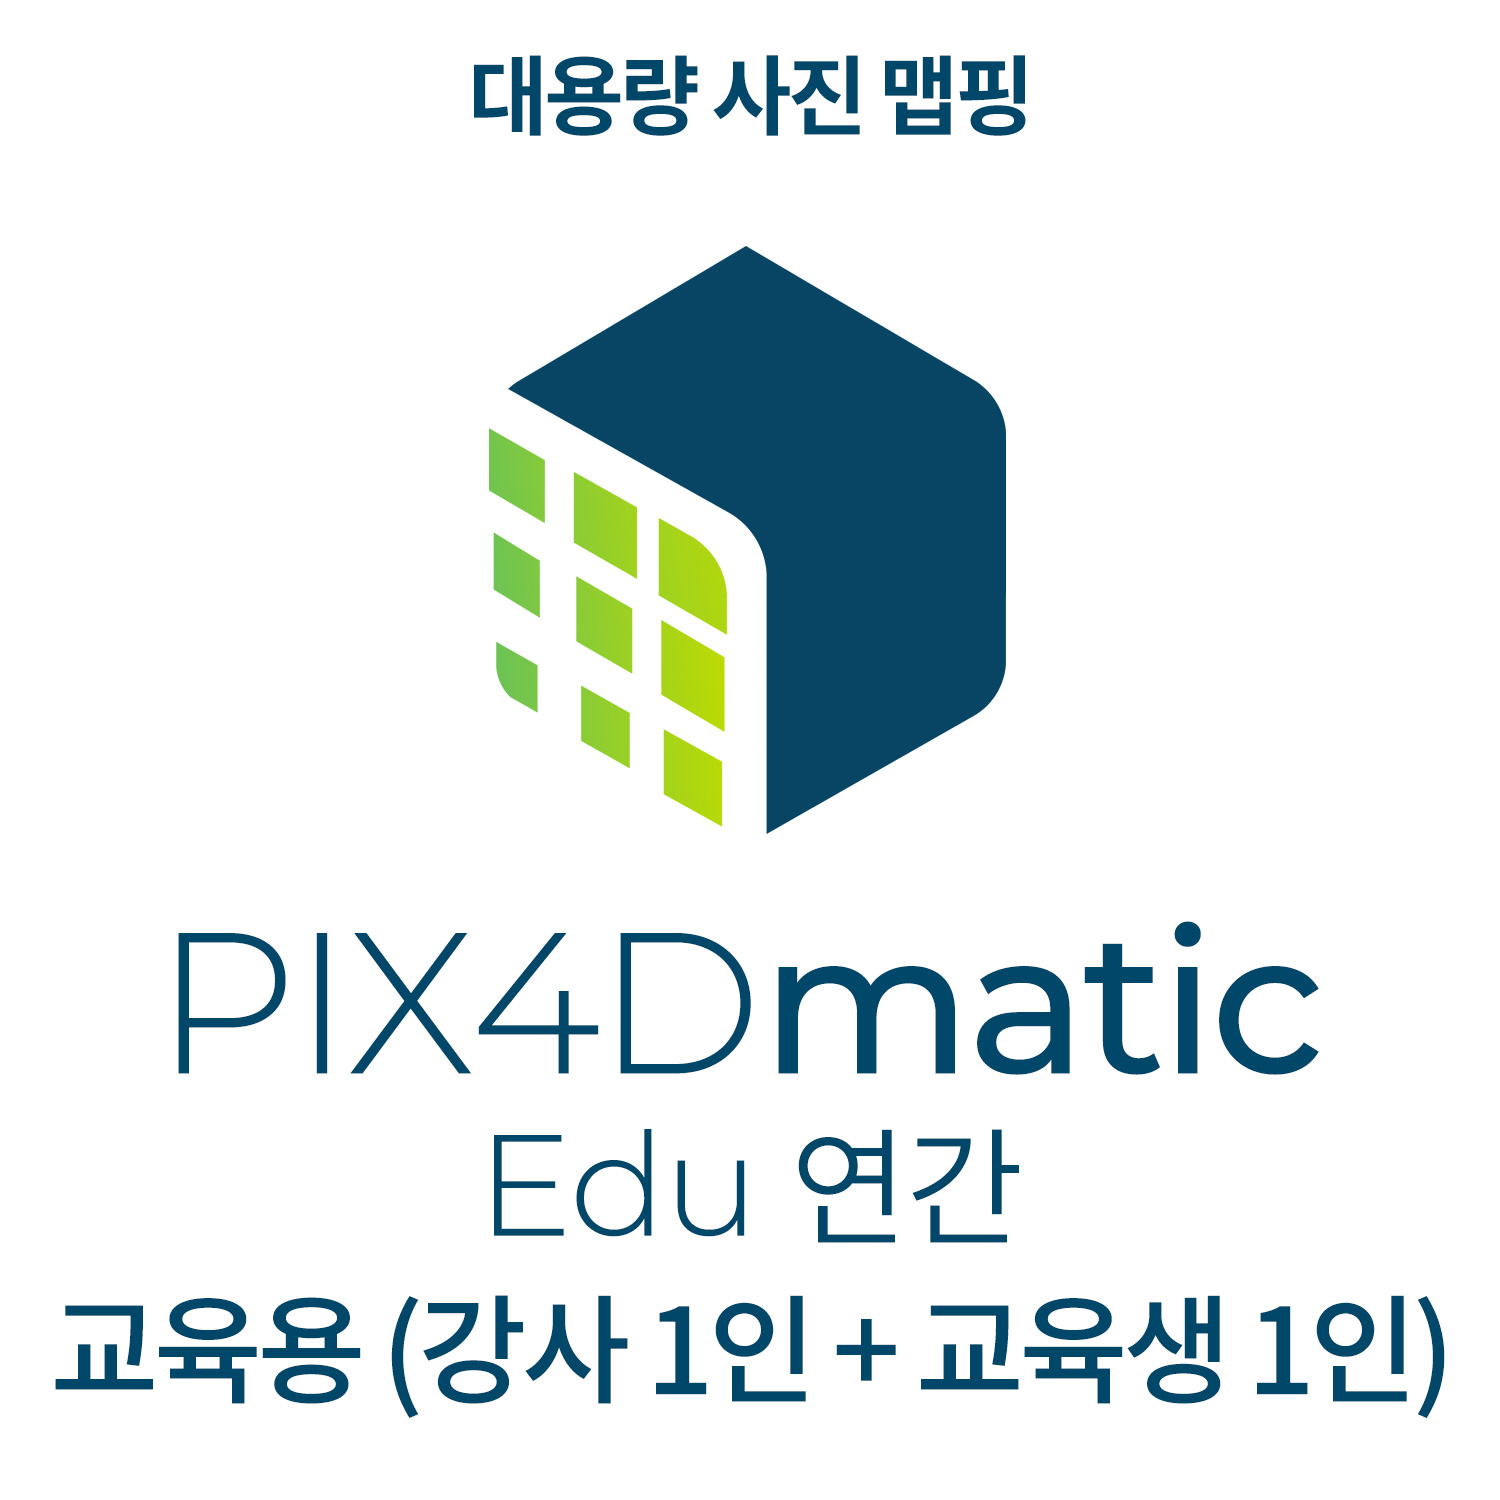 PIX4Dmatic EDU교육기관-학교(강사 1인 + 교육생 1인)(연간이용) 헬셀